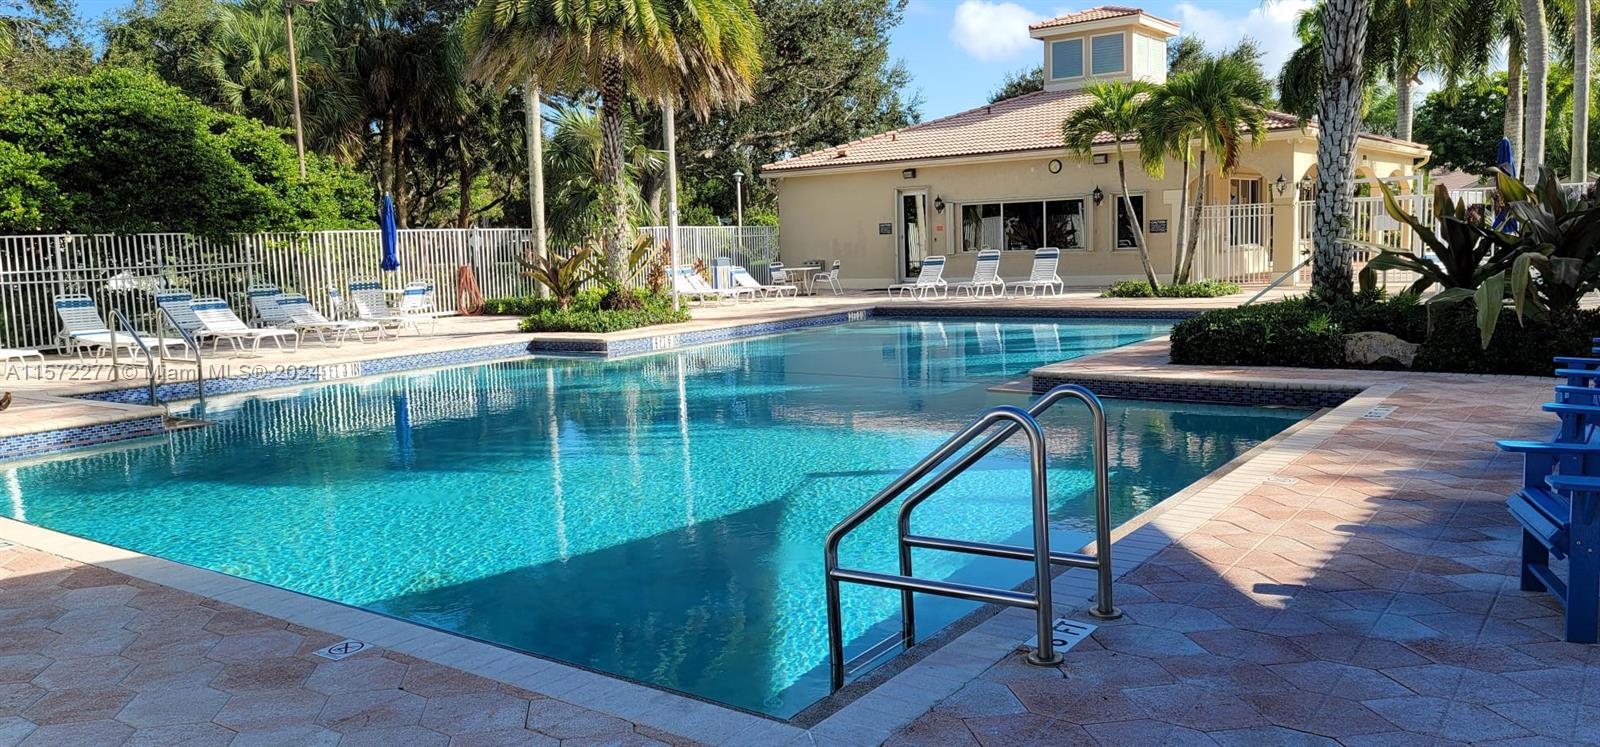 Property for Sale at 8233 White Rock Cir, Boynton Beach, Palm Beach County, Florida - Bedrooms: 3 
Bathrooms: 3  - $579,000